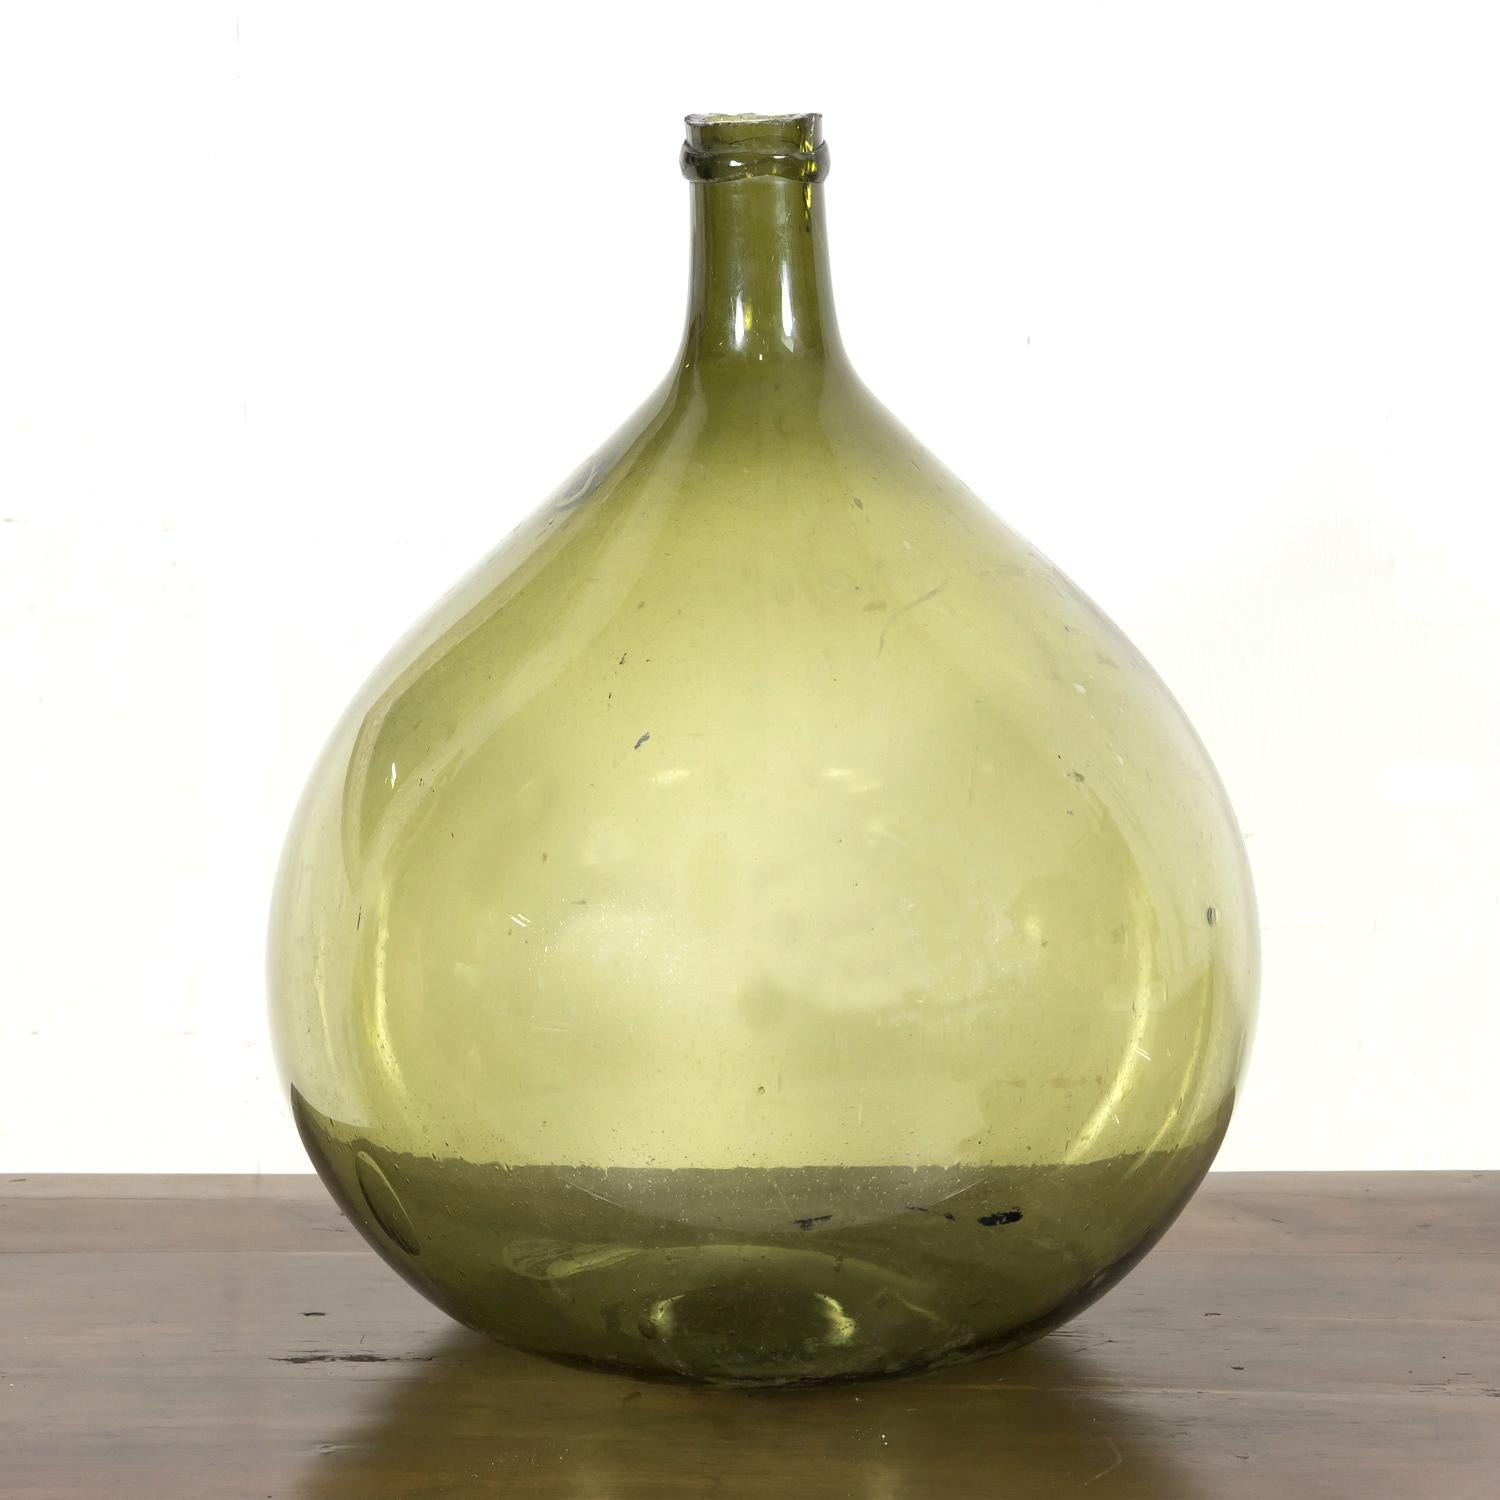 Eine schöne französische mundgeblasene Flasche aus grünem Glas aus dem 19. Jahrhundert, um 1880, mit einer bauchigen Form und hellgrünem Glas mit sichtbaren Blasen und ohne Nähte, was darauf hindeutet, dass sie mundgeblasen und nicht in einer Form